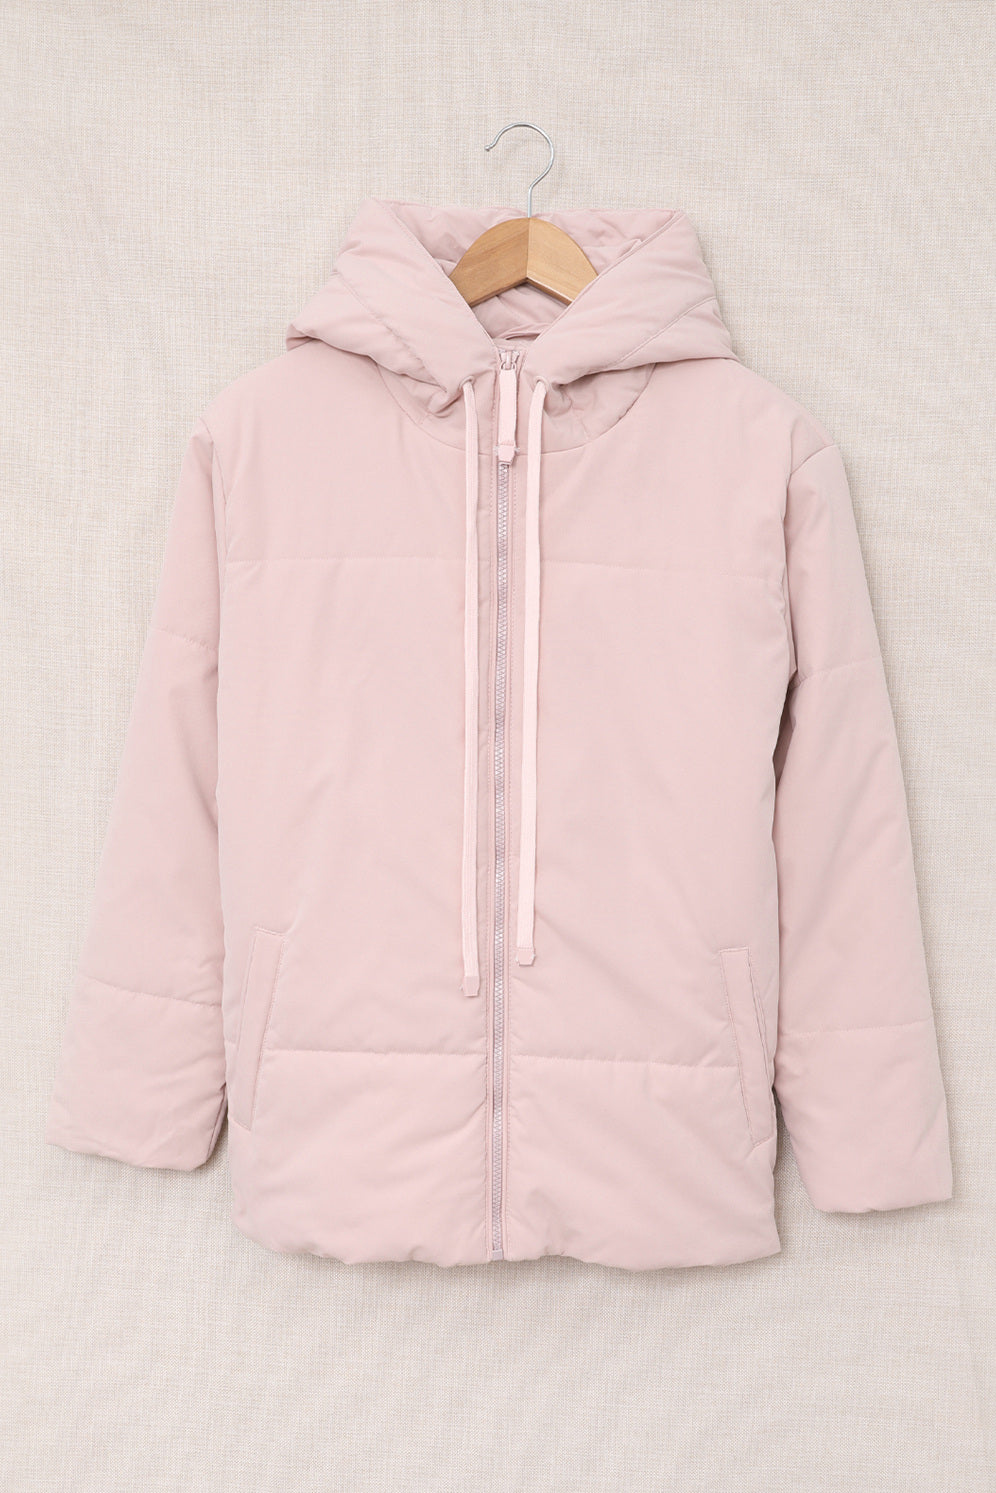 LC856045-10-S, LC856045-10-M, LC856045-10-L, LC856045-10-XL, LC856045-10-2XL, Pink Winter Coats for Women Outdoor Zipper Hooded Coat Outwear with Pockets